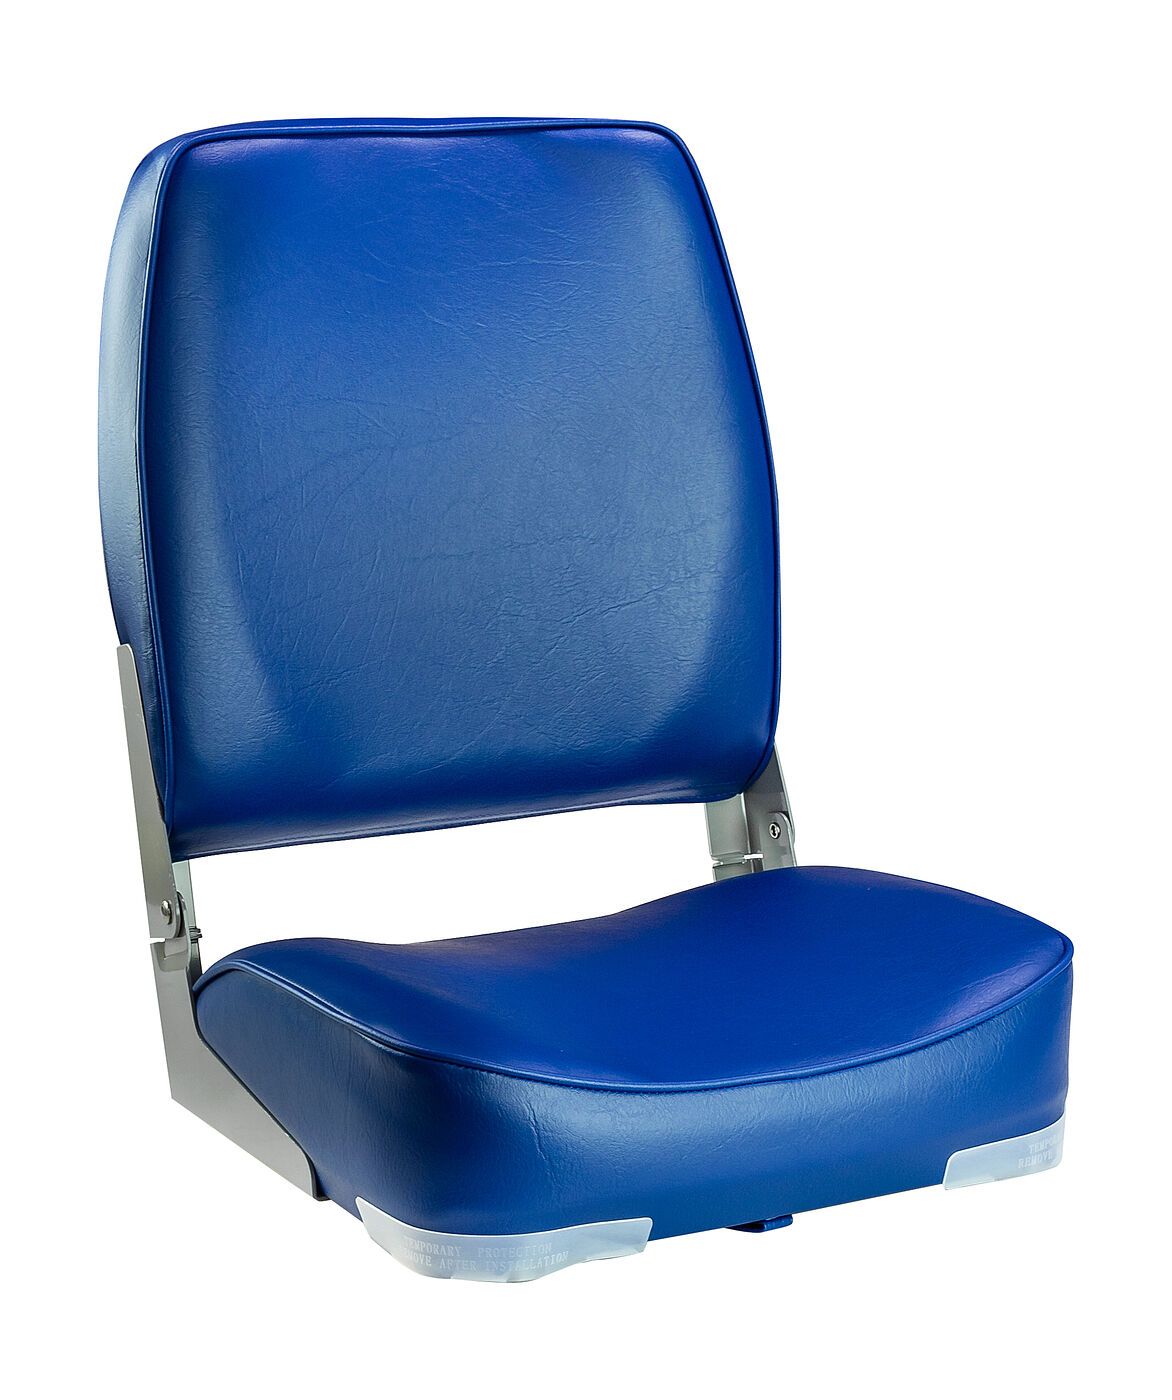 Кресло мягкое складное, высокая спинка, обивка винил, цвет синий, Marine Rocket, 889-7706